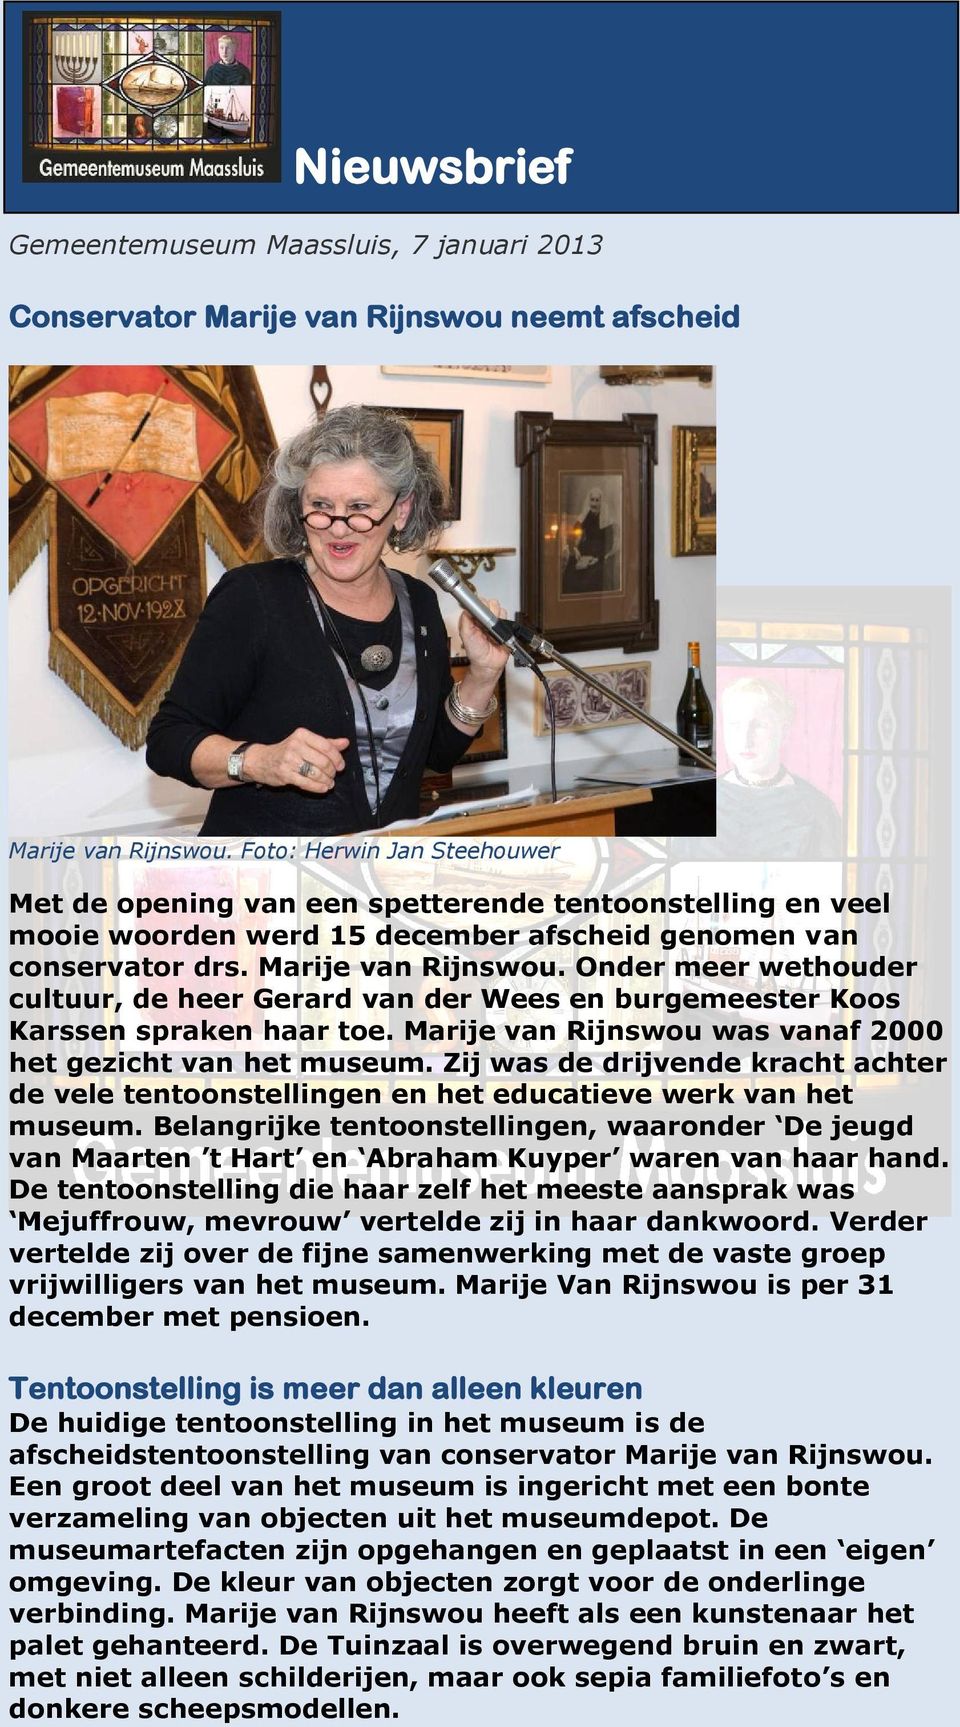 Onder meer wethouder cultuur, de heer Gerard van der Wees en burgemeester Koos Karssen spraken haar toe. Marije van Rijnswou was vanaf 2000 het gezicht van het museum.